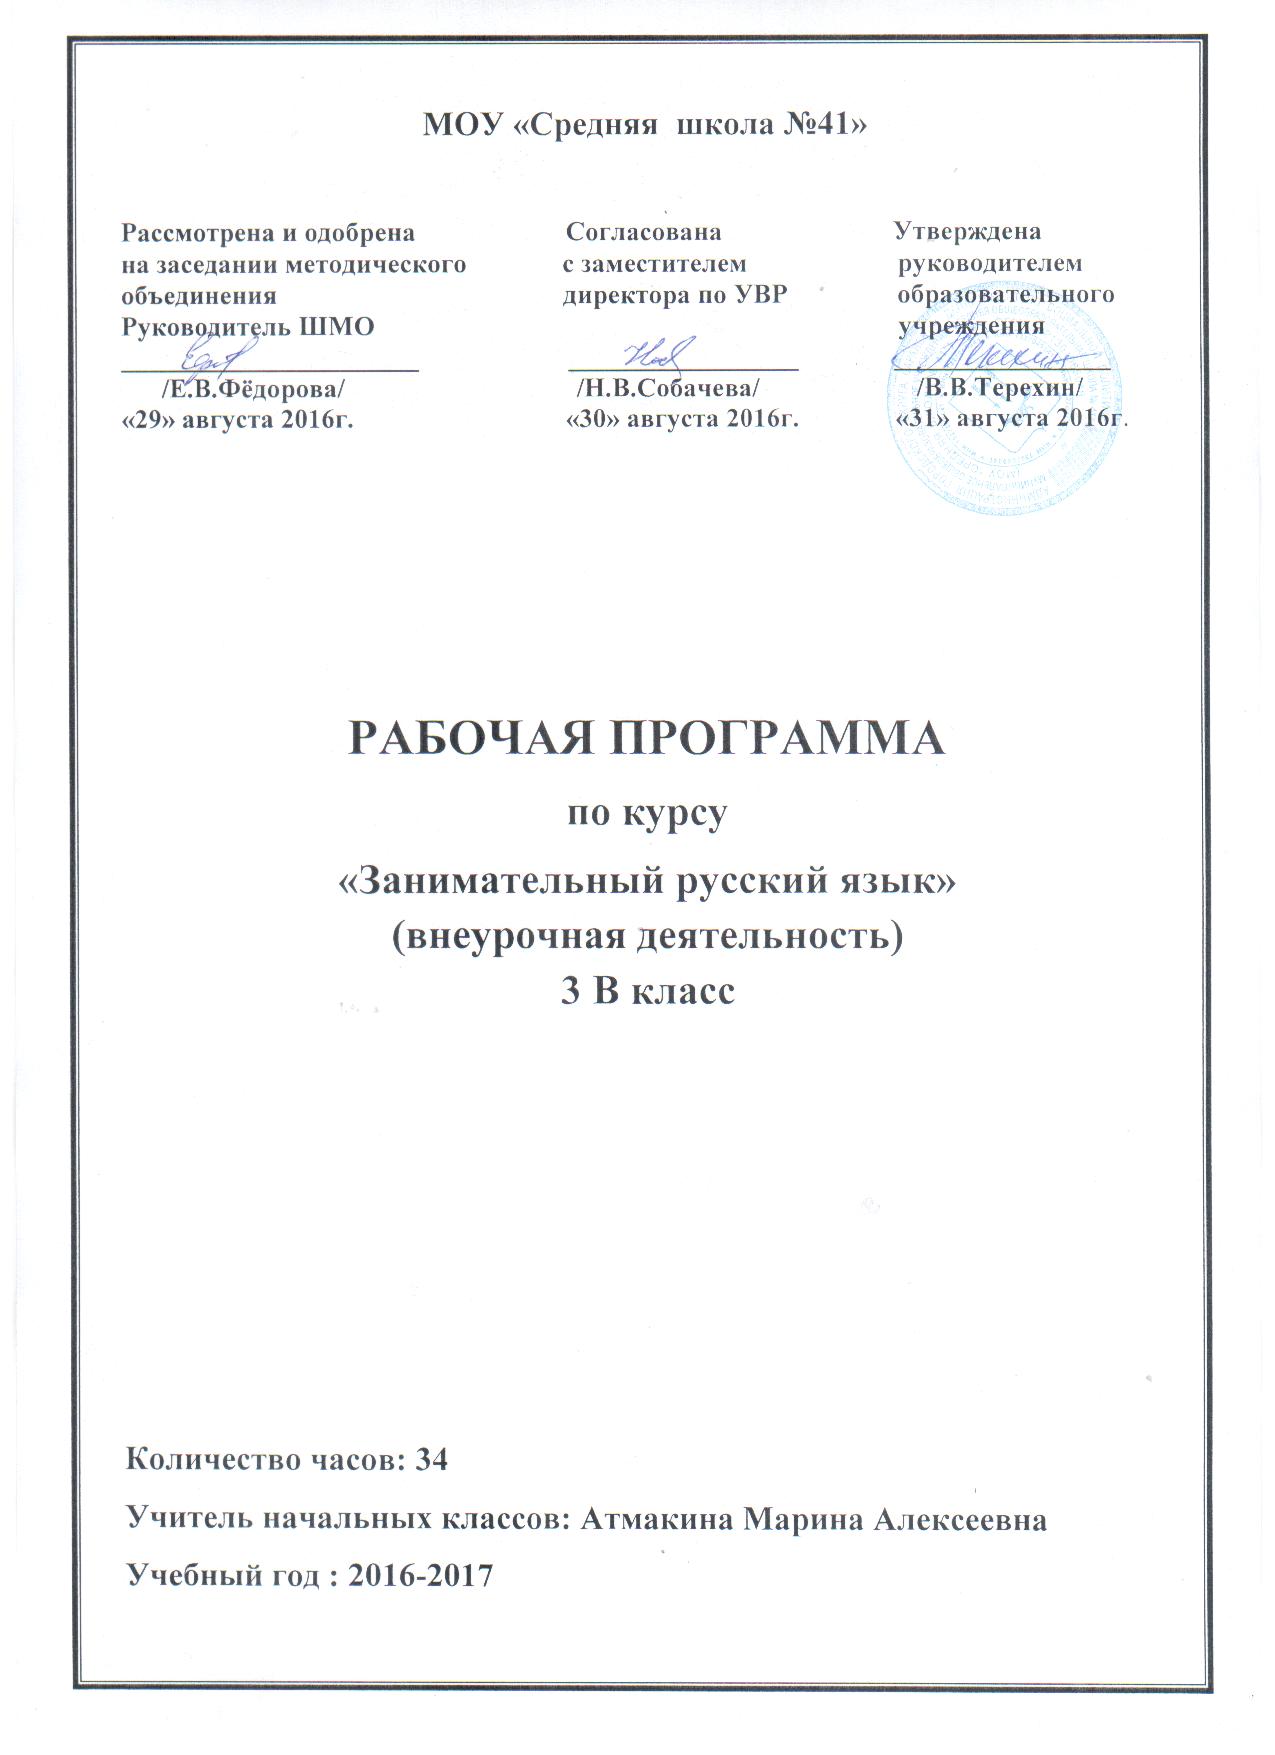 Рабочая программа внеурочной деятельности по русскому языку Занимательный русский язык(3 класс)